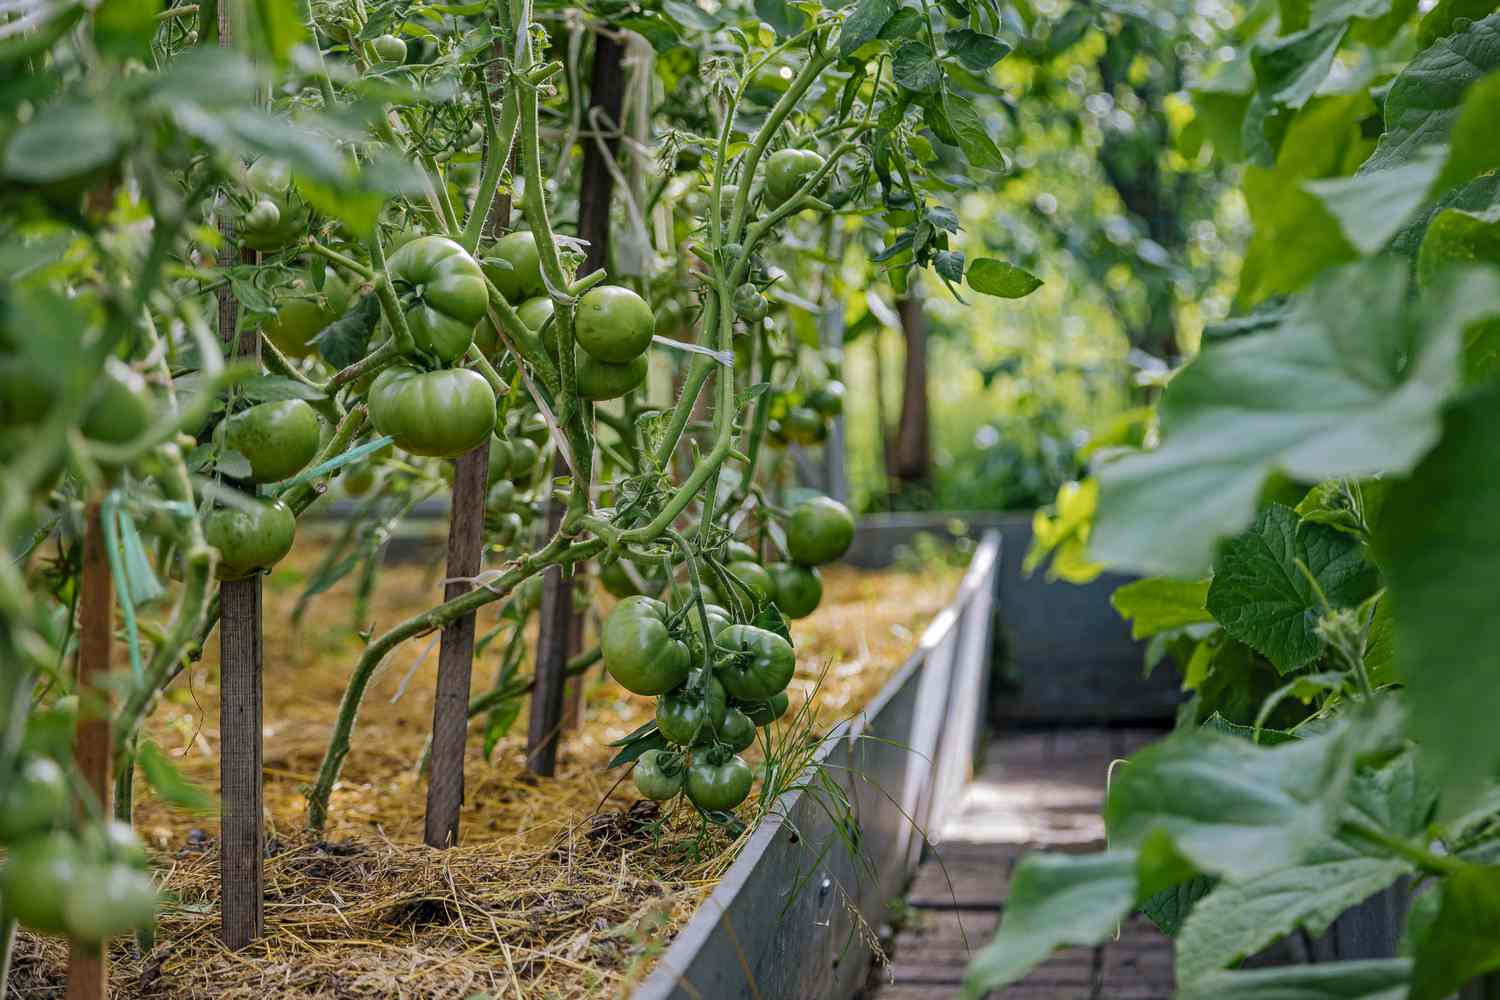 Después de los tomates, no se debe cultivar ningún miembro de la familia de las solanáceas en este parterre durante al menos un año